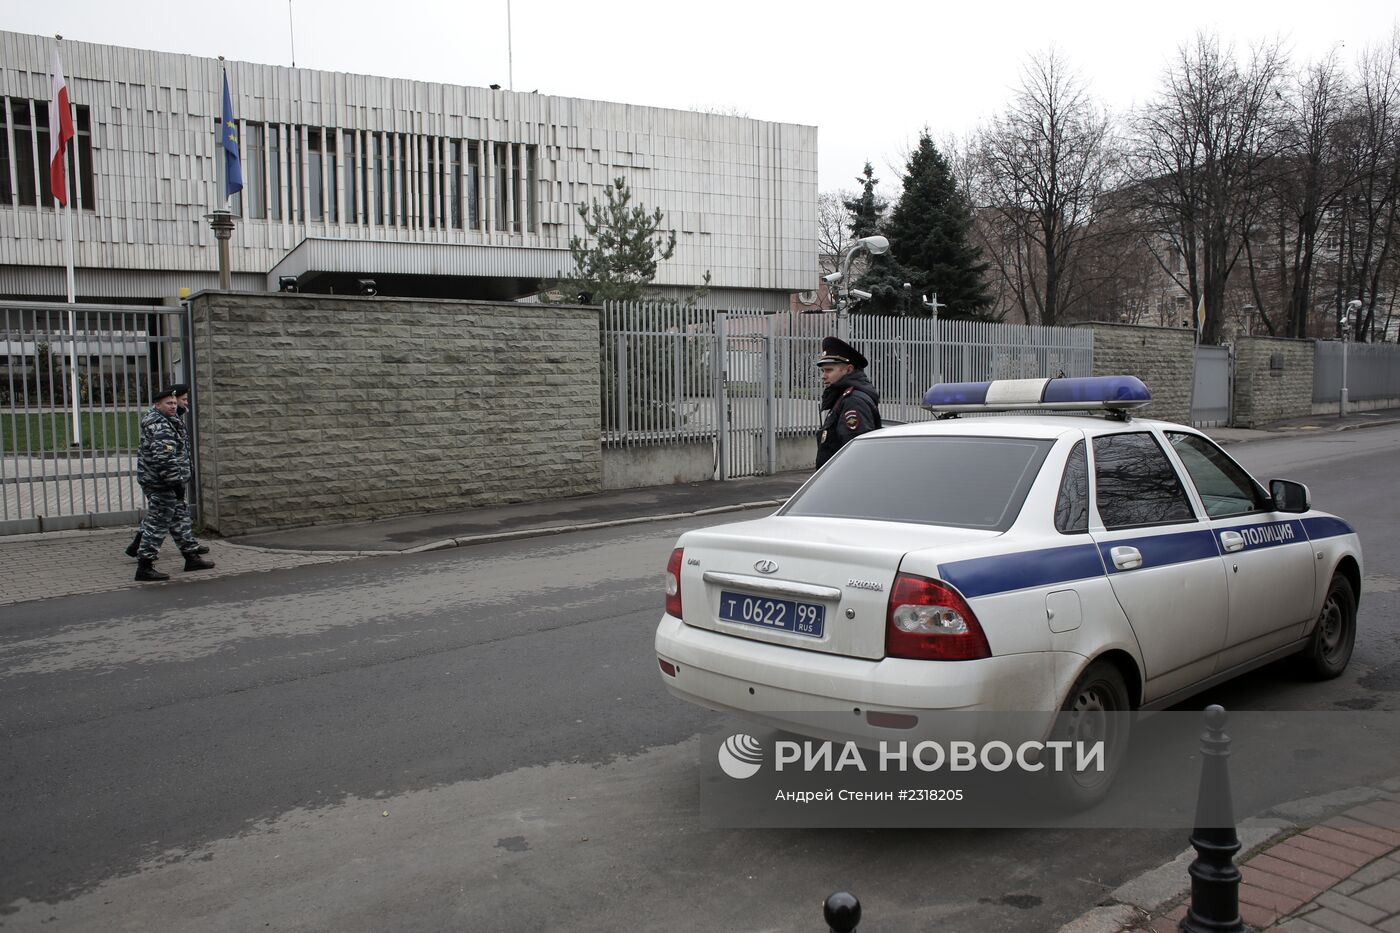 Усиление мер безопасности у здания посольства Польши в Моск